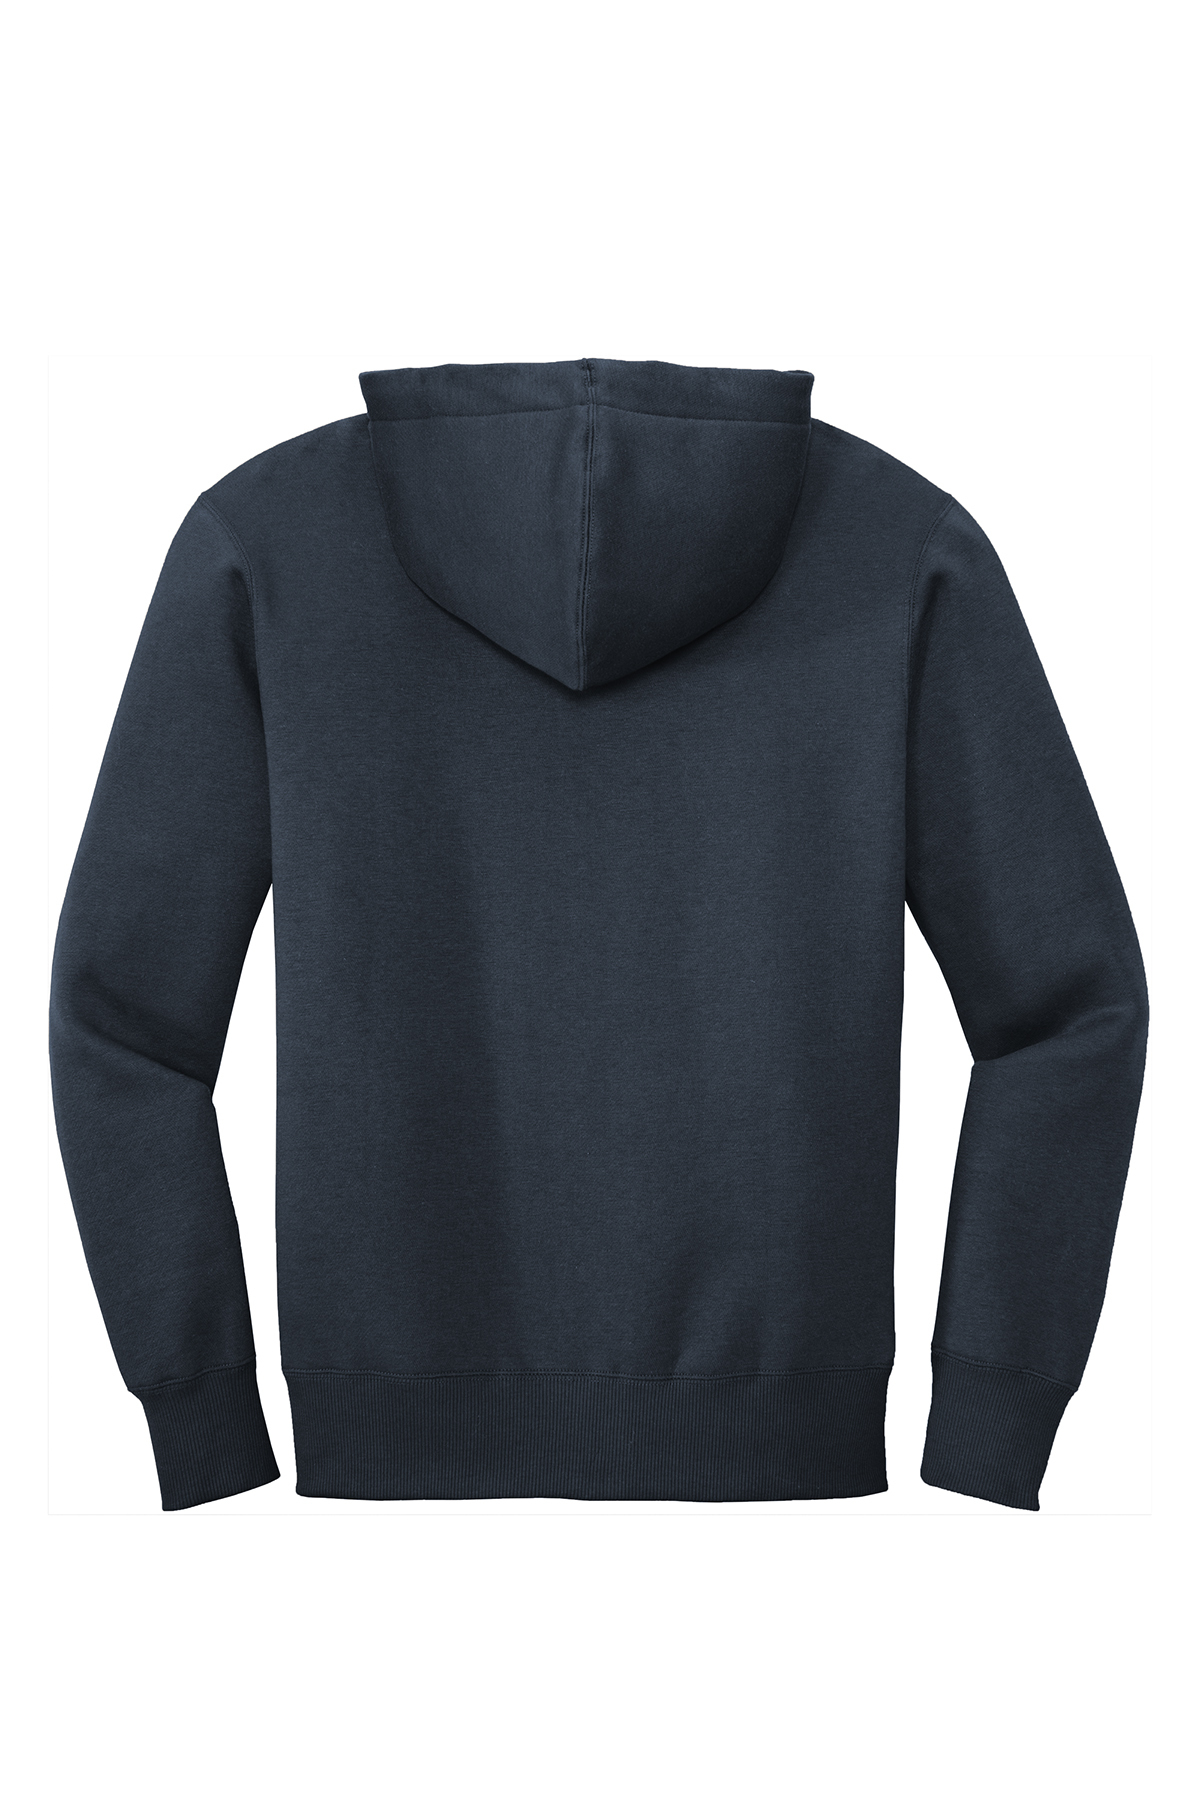 District Perfect Weight Fleece Full-Zip Hoodie | Product | SanMar